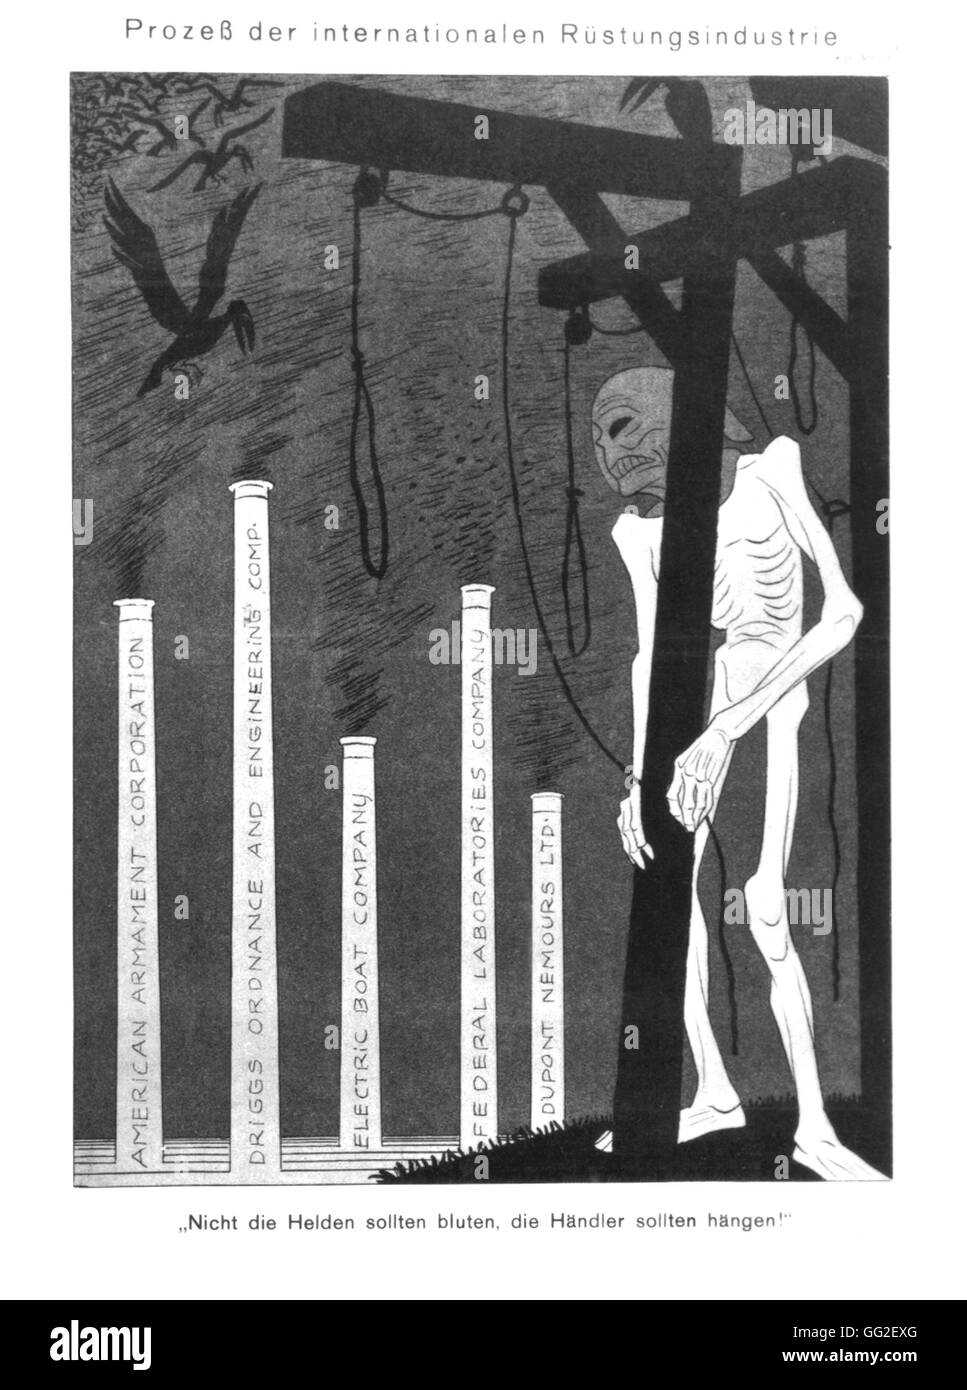 Vignetta satirica da Karl Arnold. Prova della international industria degli armamenti. "Gli eroi non dovrebbero essere abbattuti, ma i commercianti di armi dovrebbe essere impiccato". 1934 Stati Uniti Foto Stock